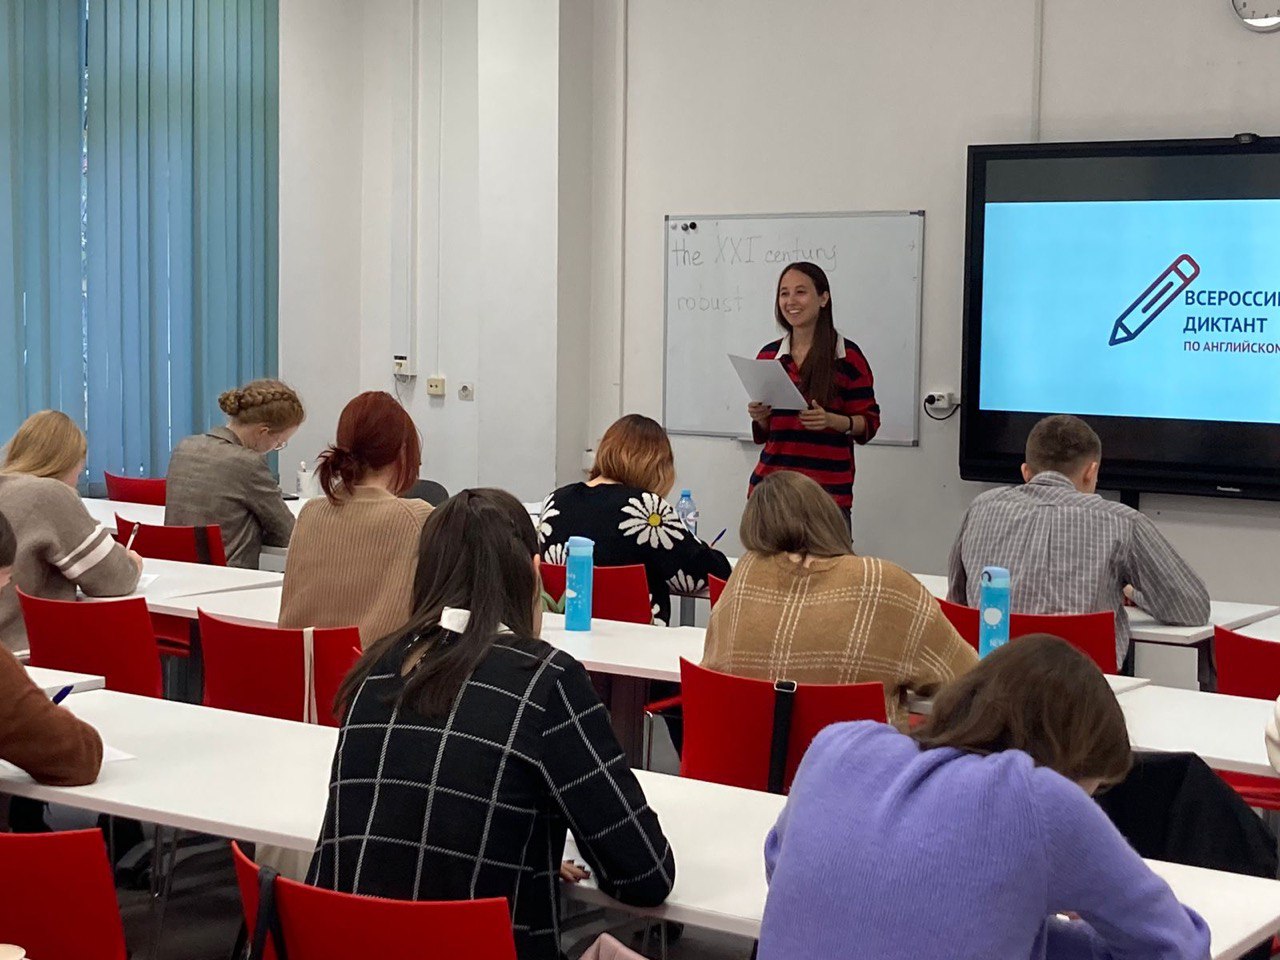 Студенты ИИЯ приняли участие во Всероссийском диктанте по английскому языку